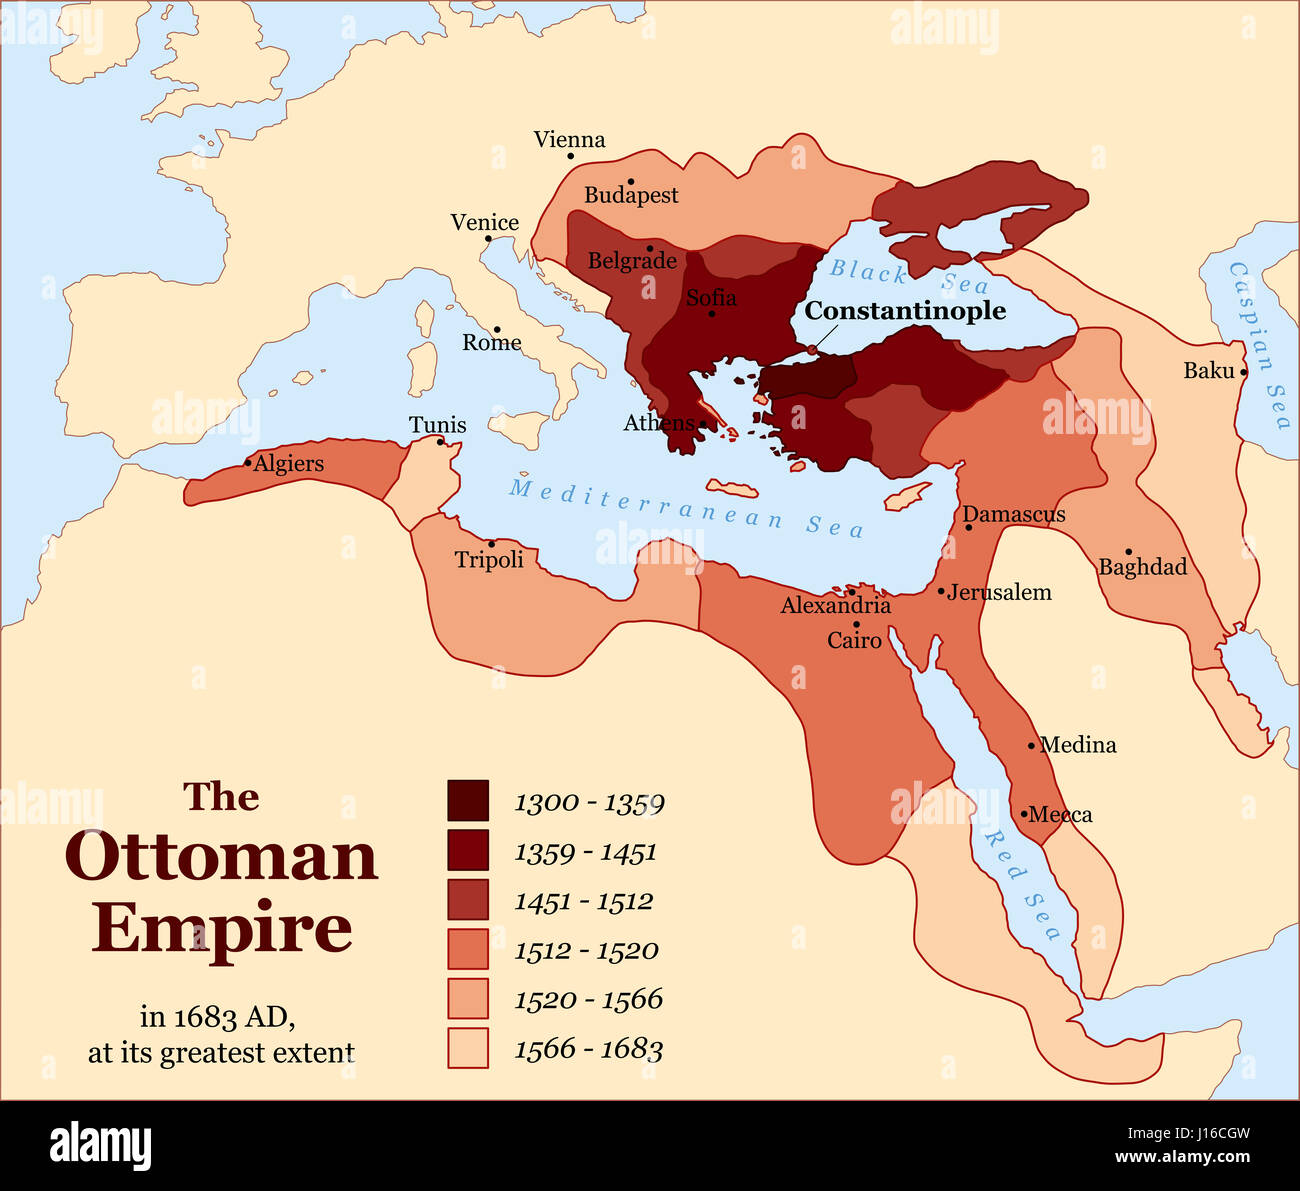 Türkische Geschichte - The Ottoman Empire at seine größte Ausdehnung 1683 - Übersichtskarte Territorium Expansion und militärische Übernahme. Stockfoto